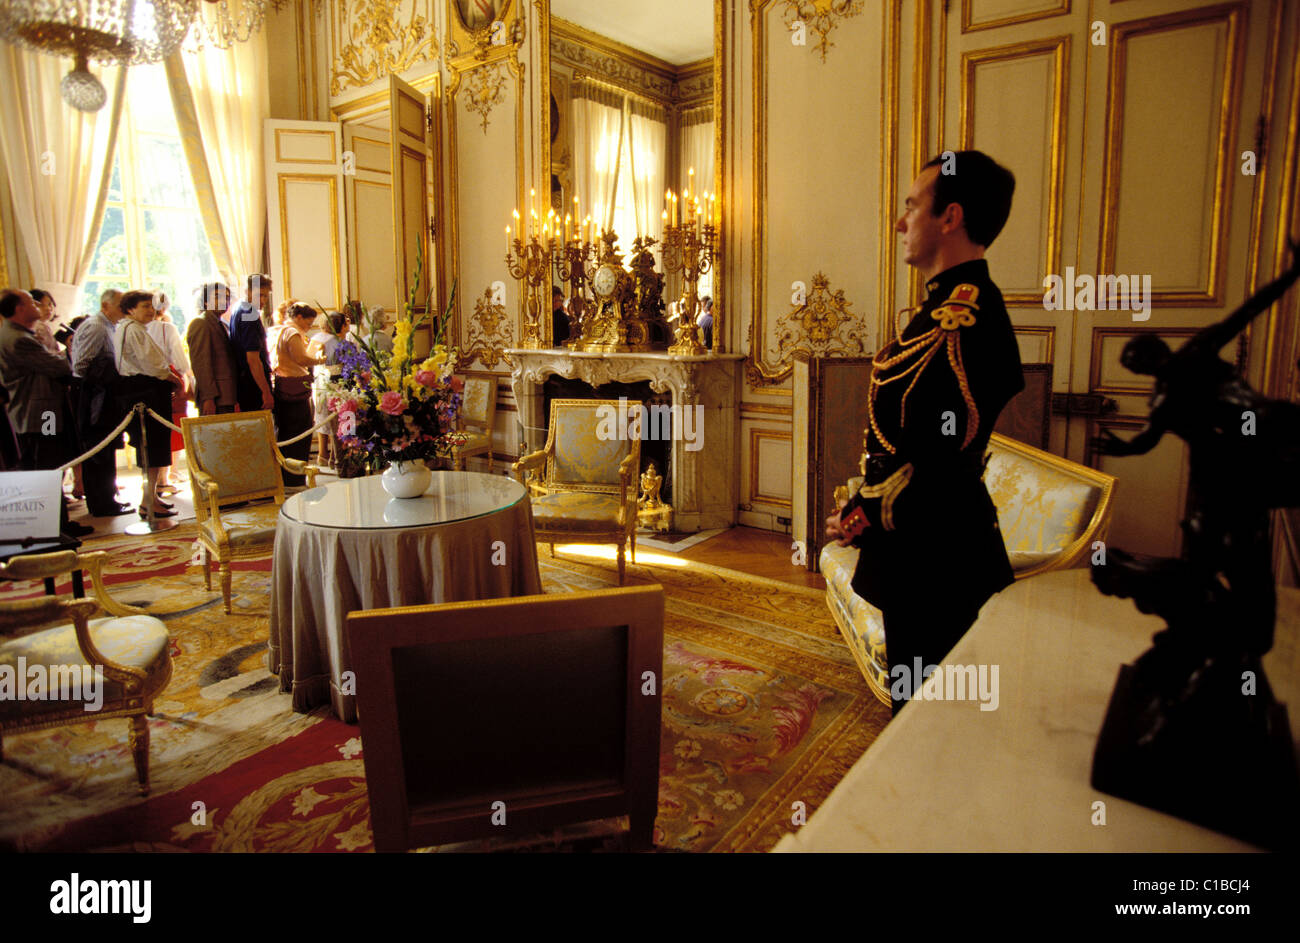 France, Paris, visite du Palais de l'Élysée pendant les journées du patrimoine (journées du patrimoine) Banque D'Images